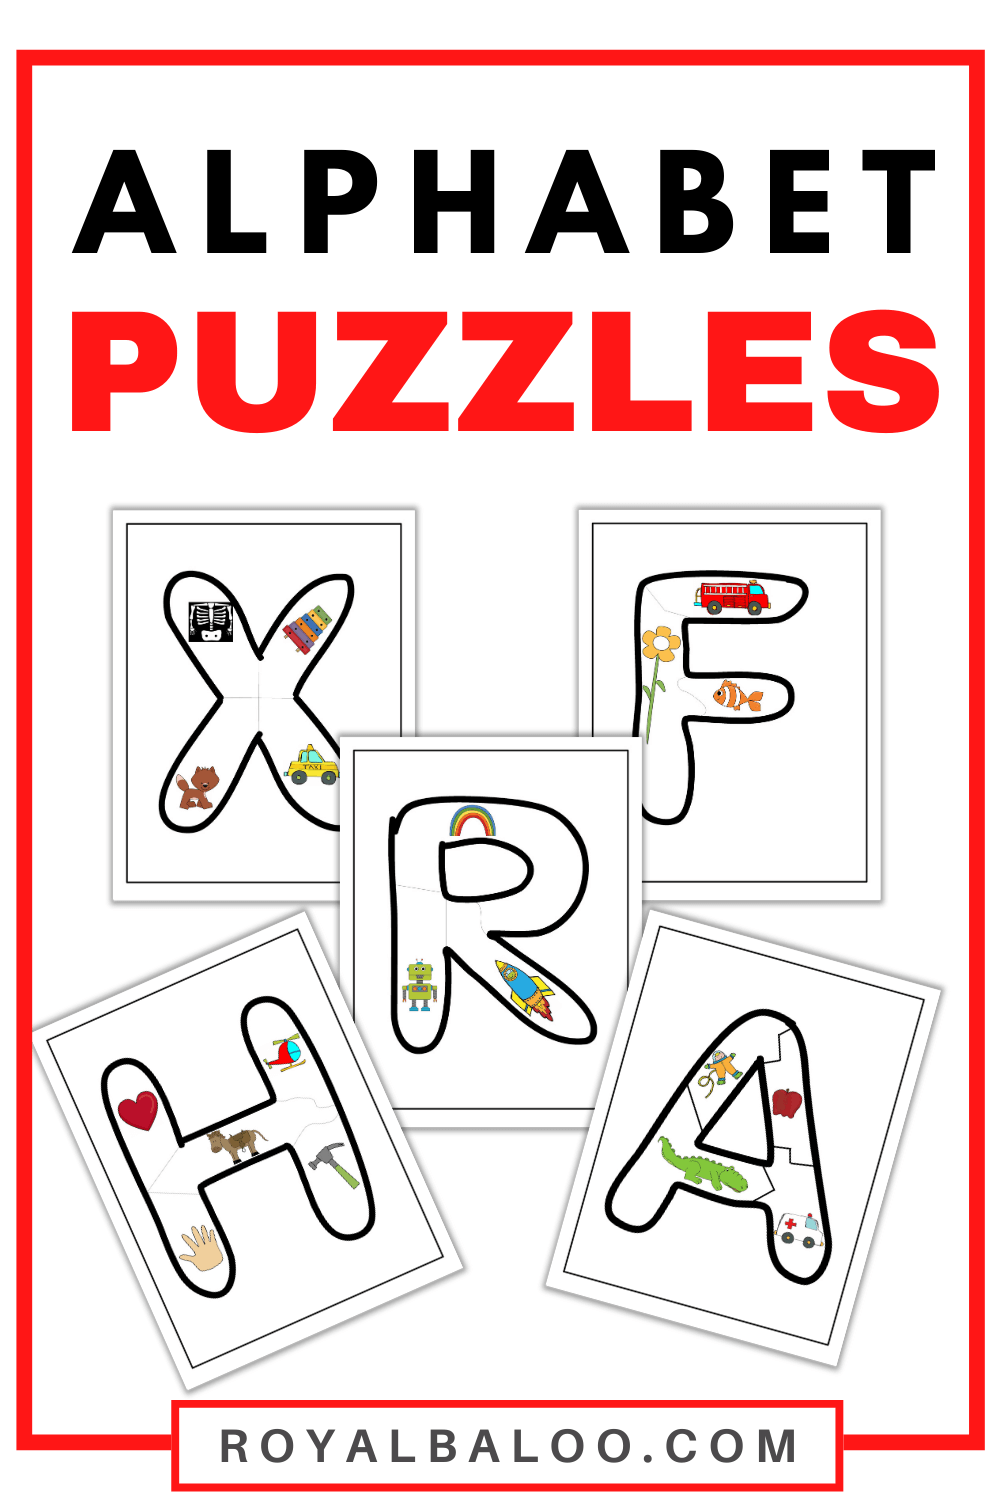 Alphabet Puzzles Royal Baloo